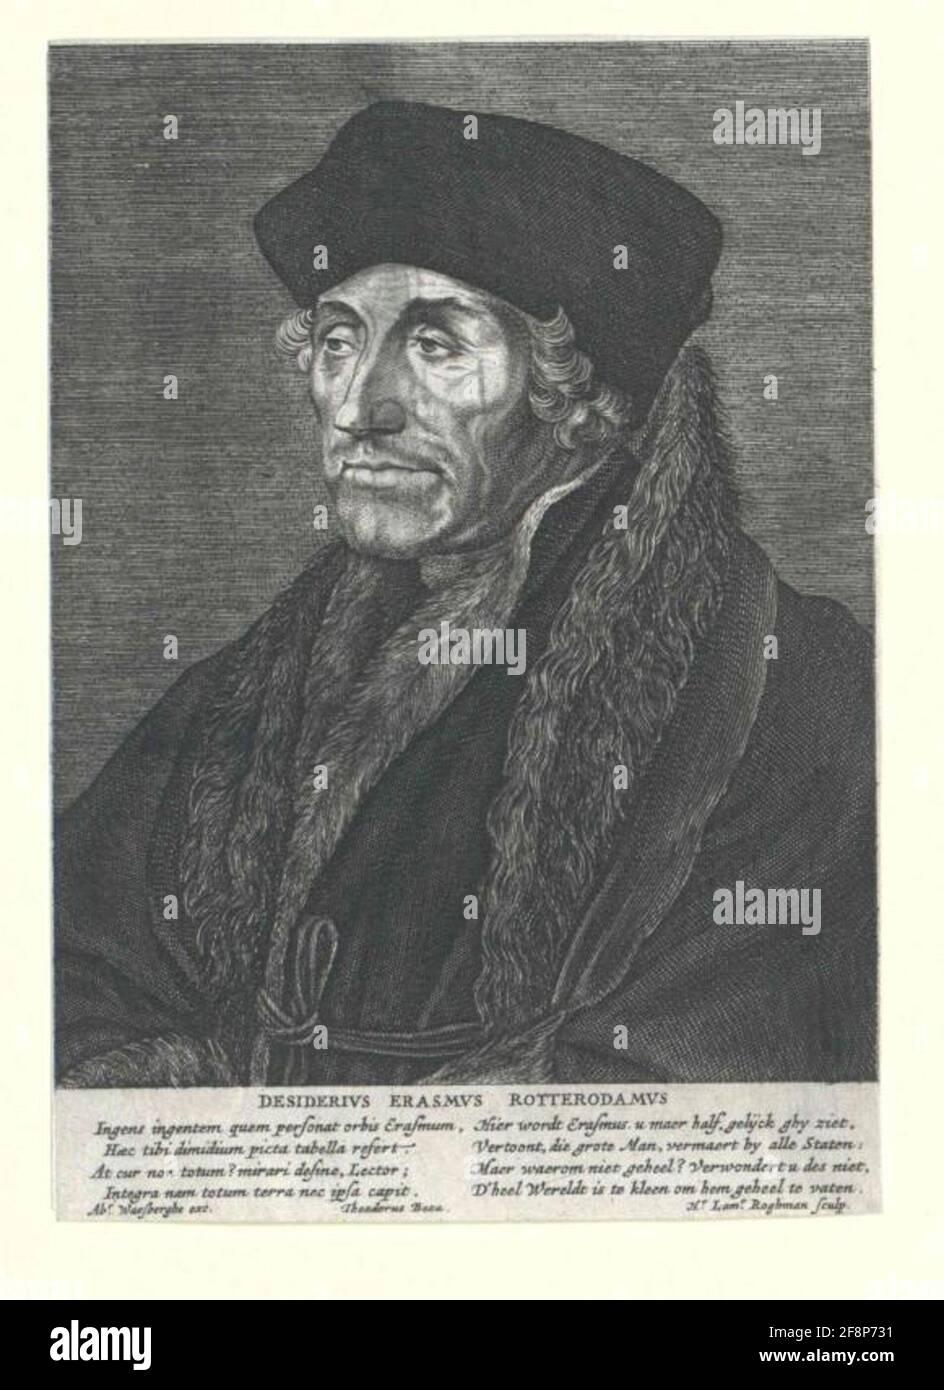 Erasmus of Rotterdam Publisher: Waesberge, Abraham Vanstecher: Roghman, Hendrick Lambertz.Dation: 1621/1650 Stock Photo